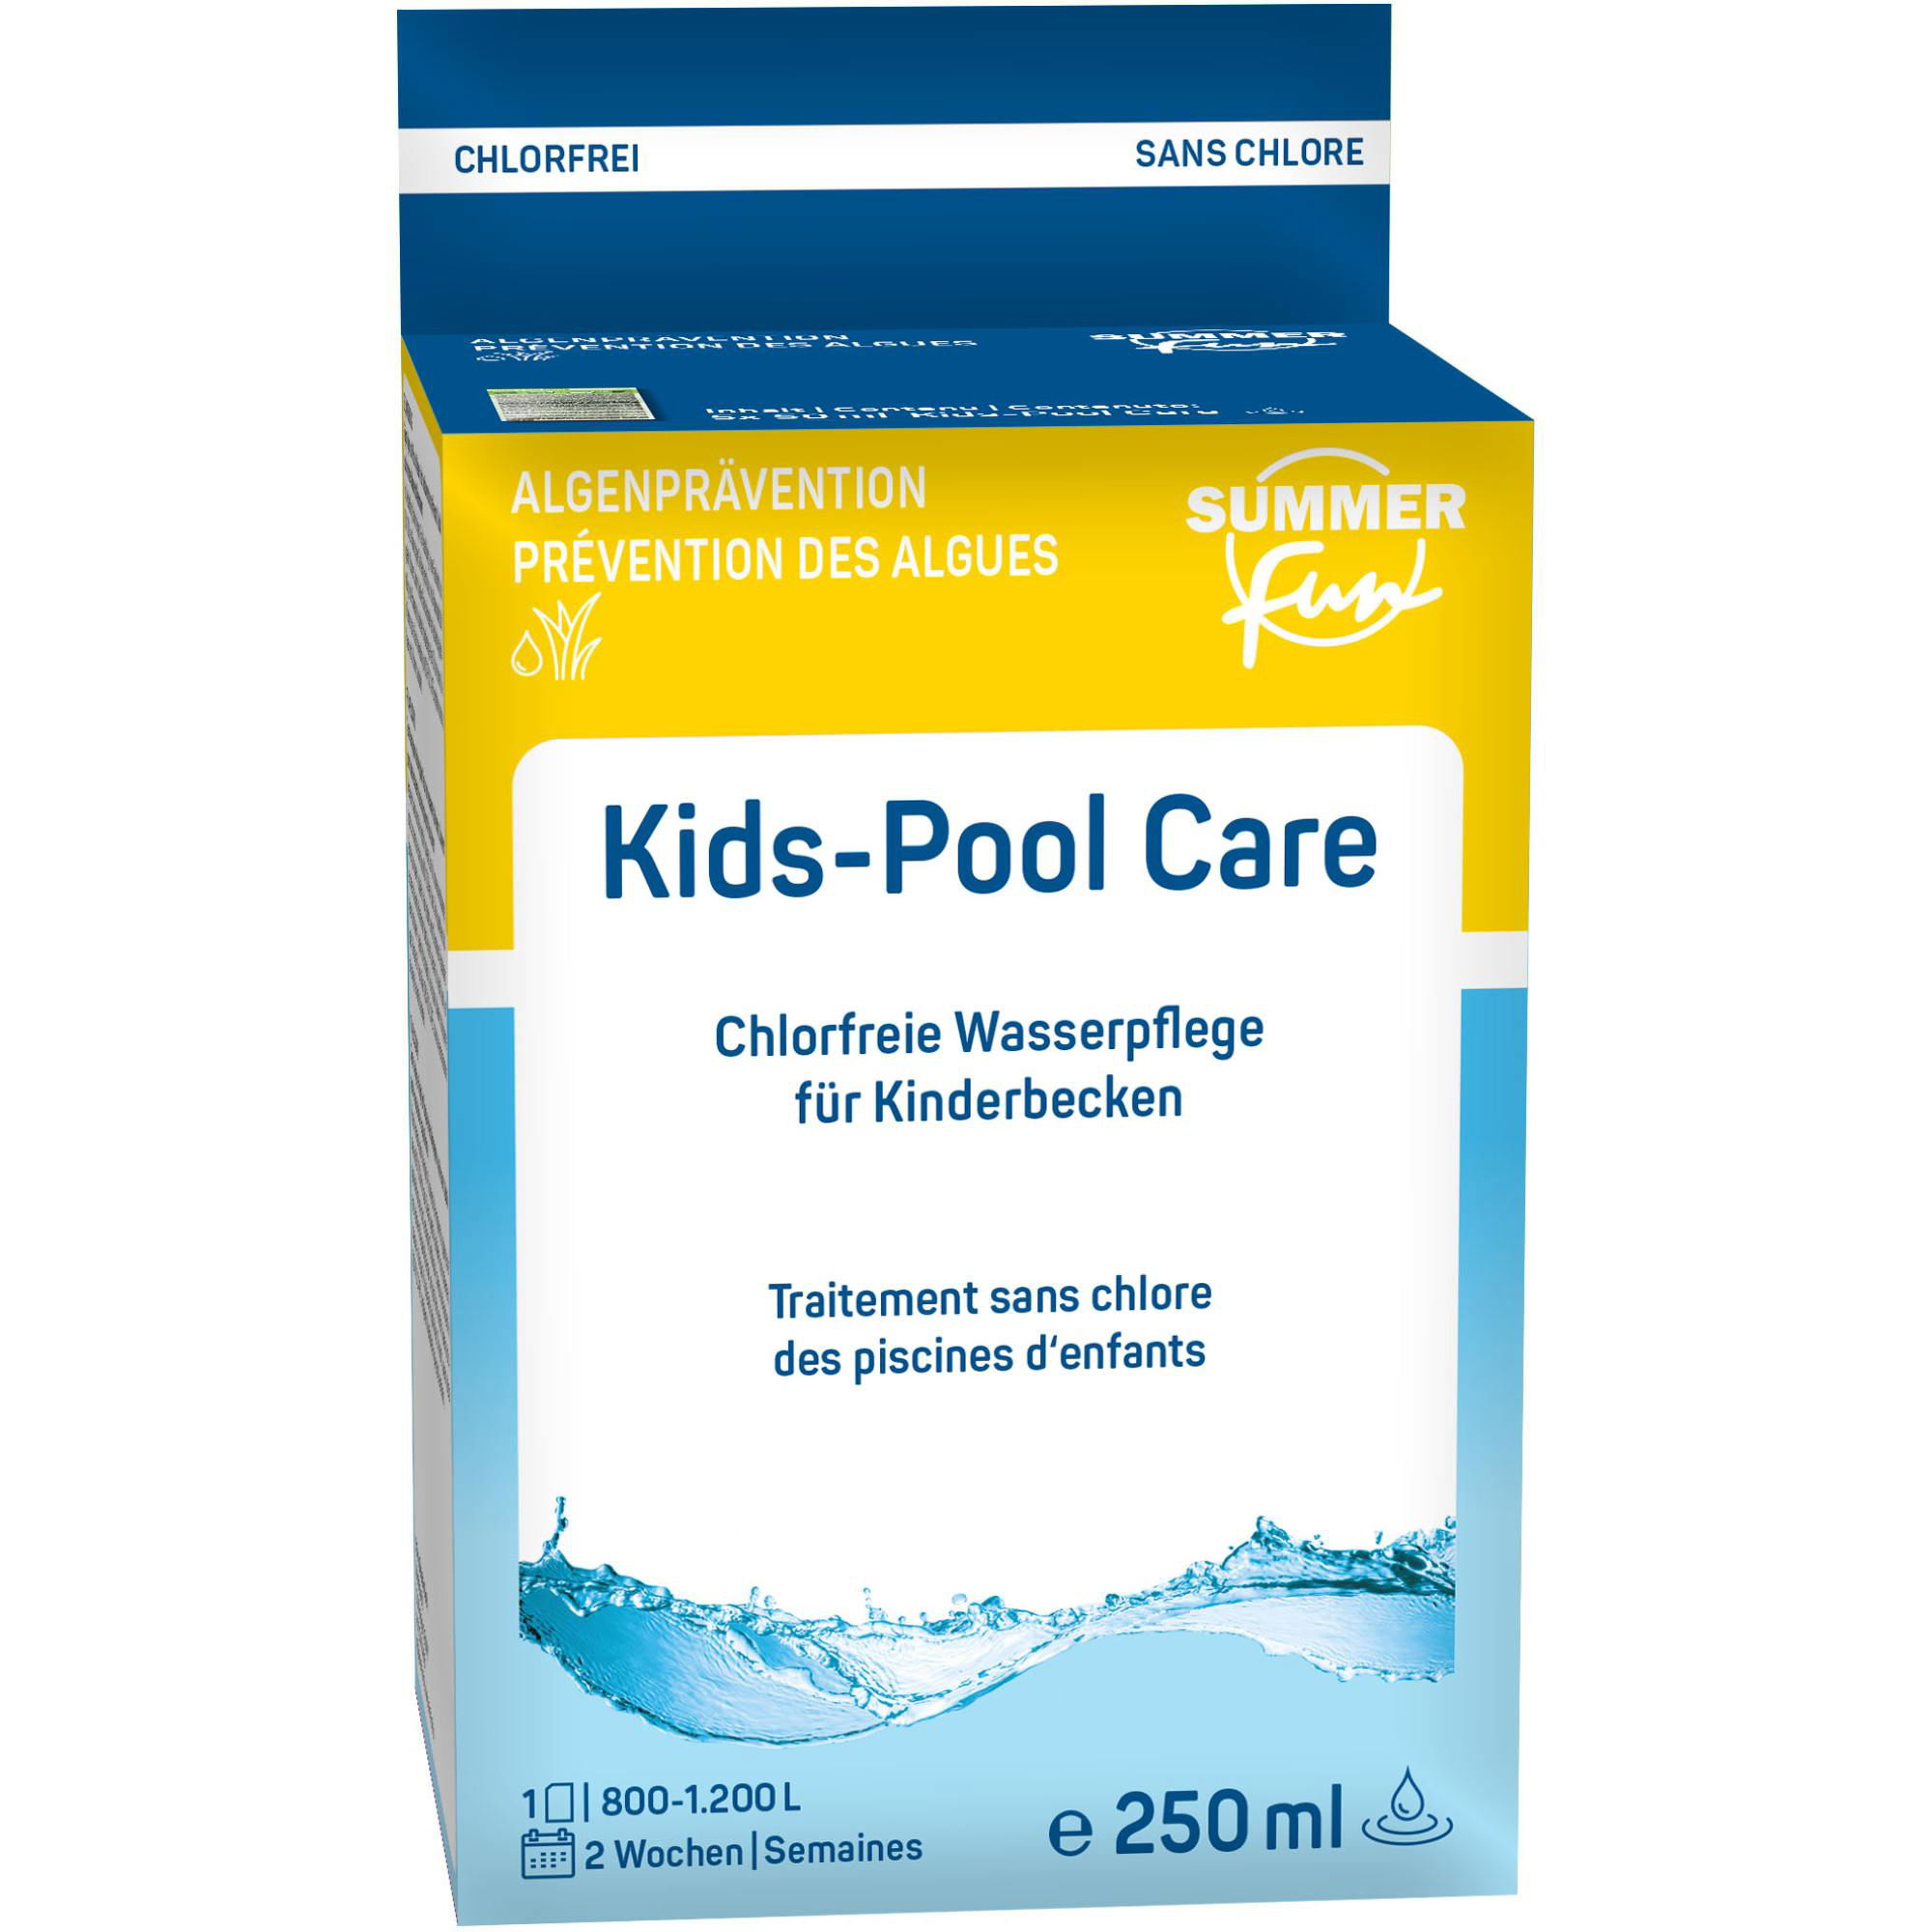 Summer Fun Kids-Pool Care (5x50 ml) - 250 ml